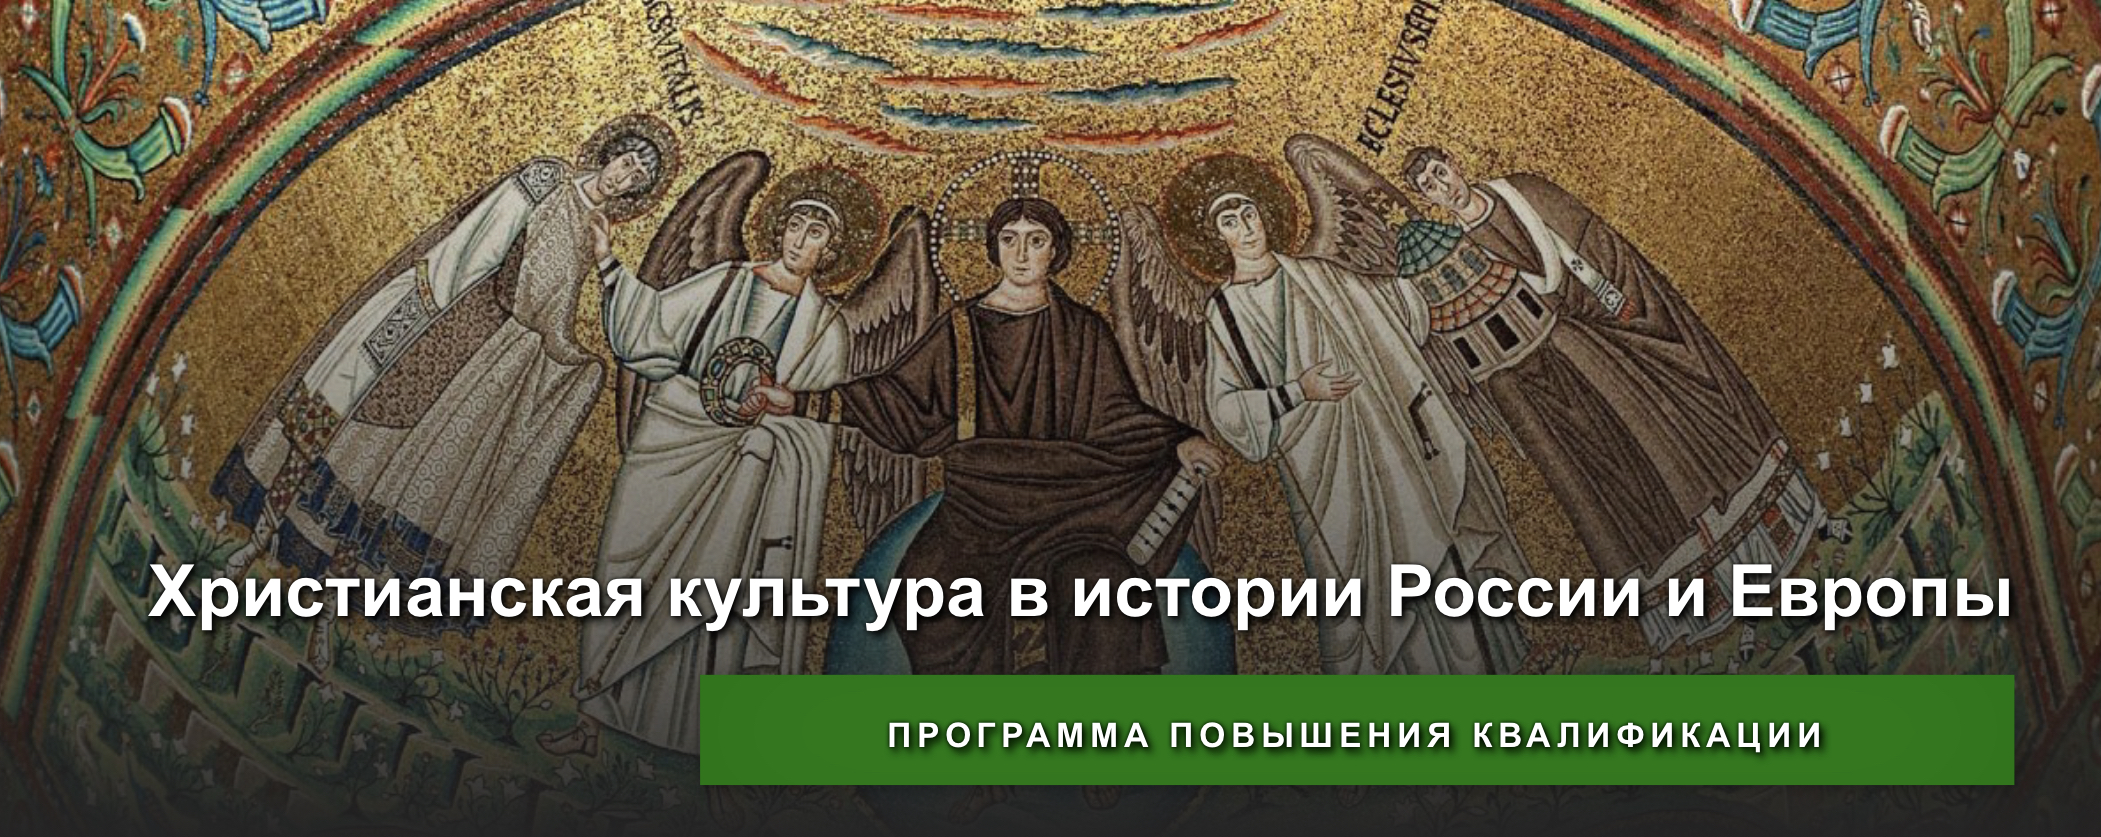 Состоялись занятия по программе повышения квалификации "Христианская культура в истории России и Европы"